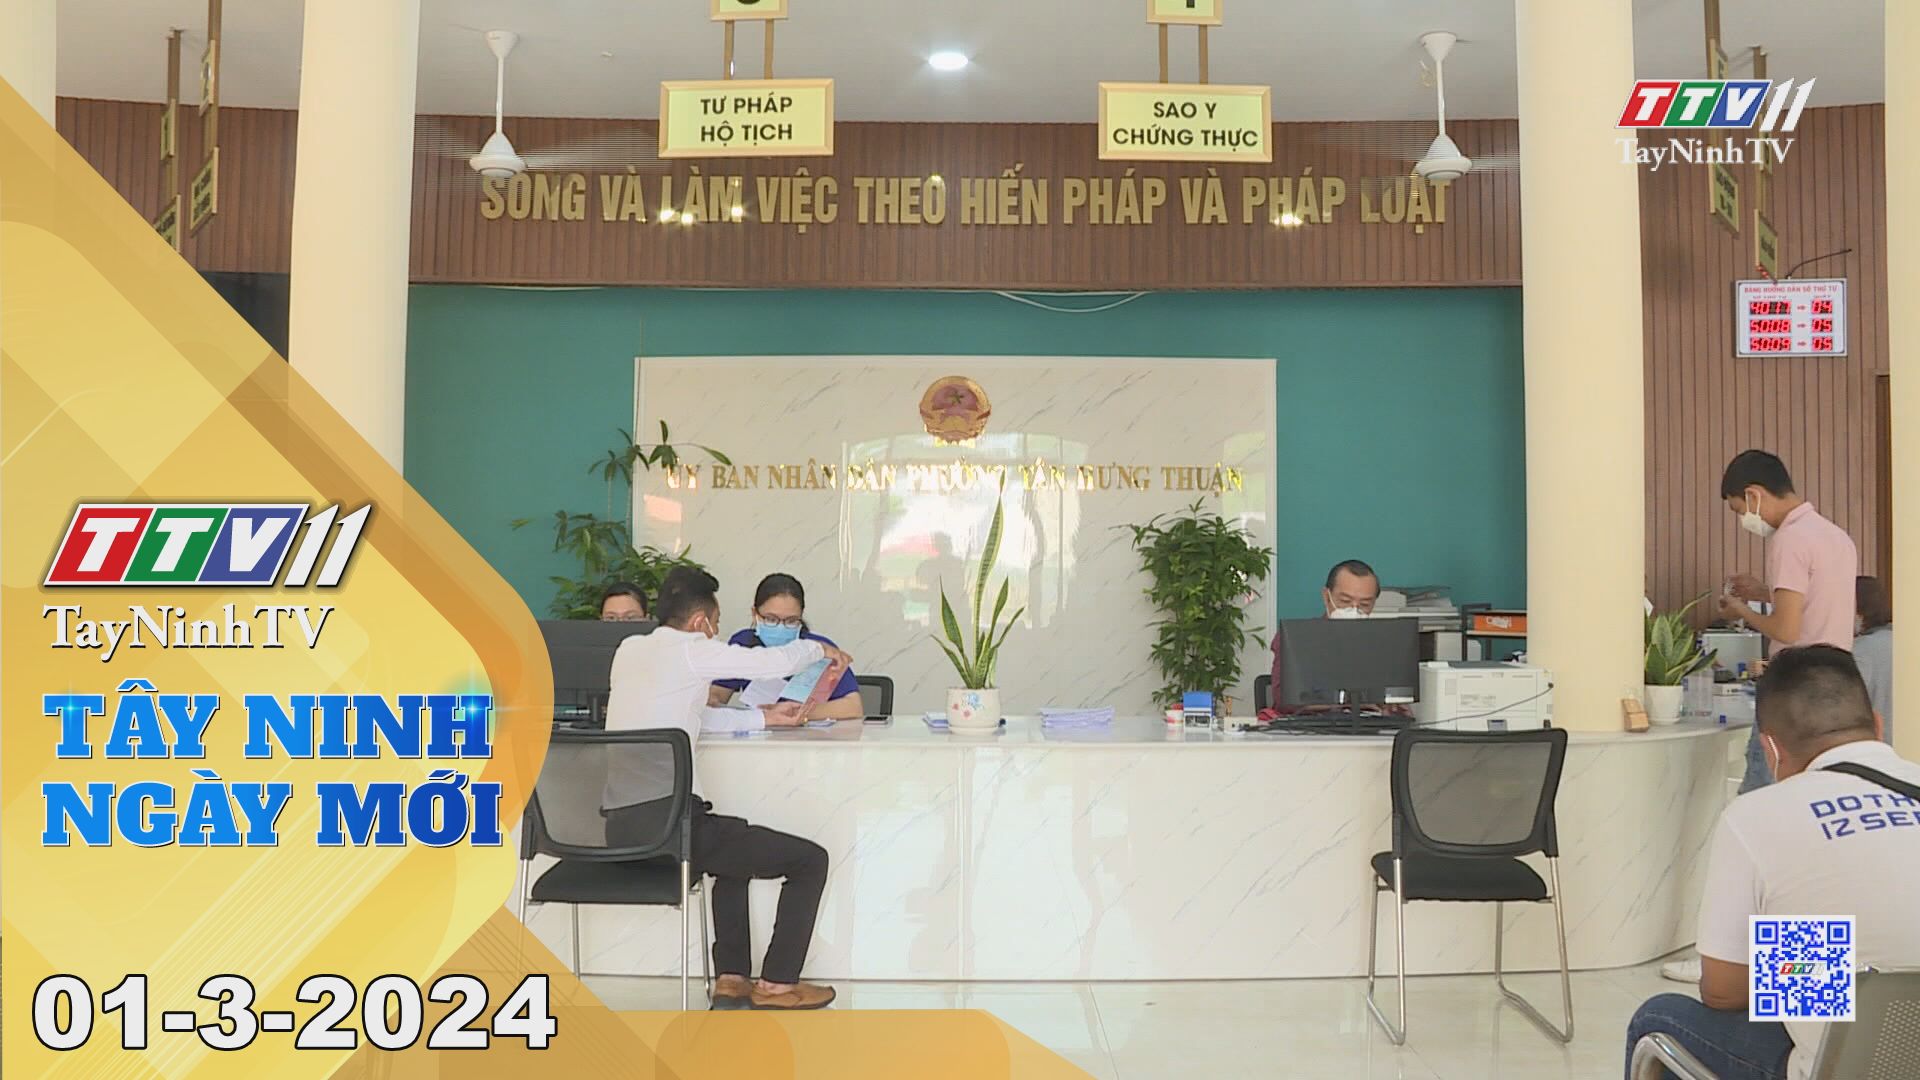 Tây Ninh ngày mới 01-3-2024 | Tin tức hôm nay | TayNinhTV